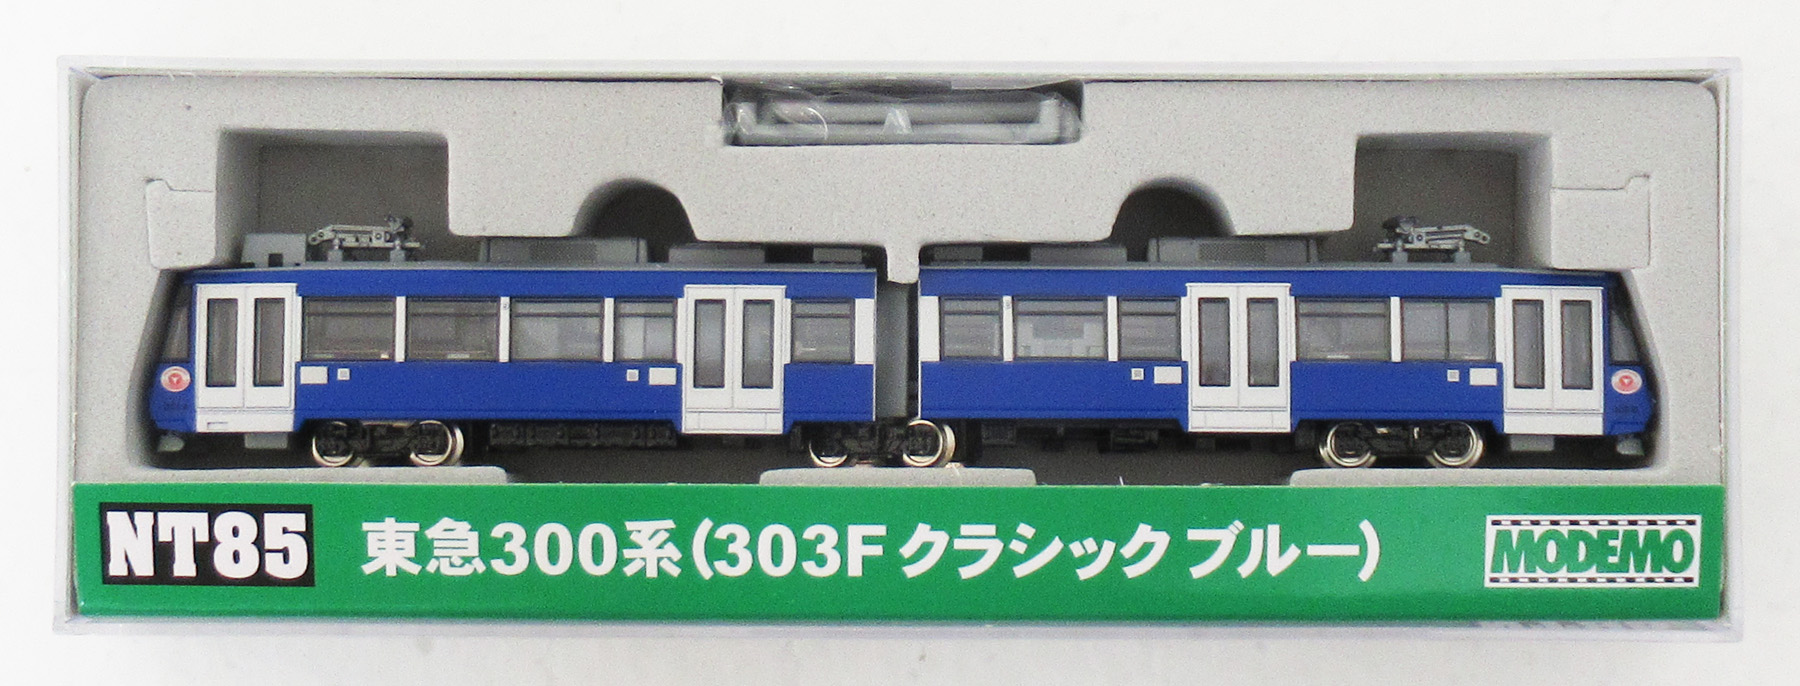 公式]鉄道模型(NT85東急300系 (303F クラシックブルー) )商品詳細